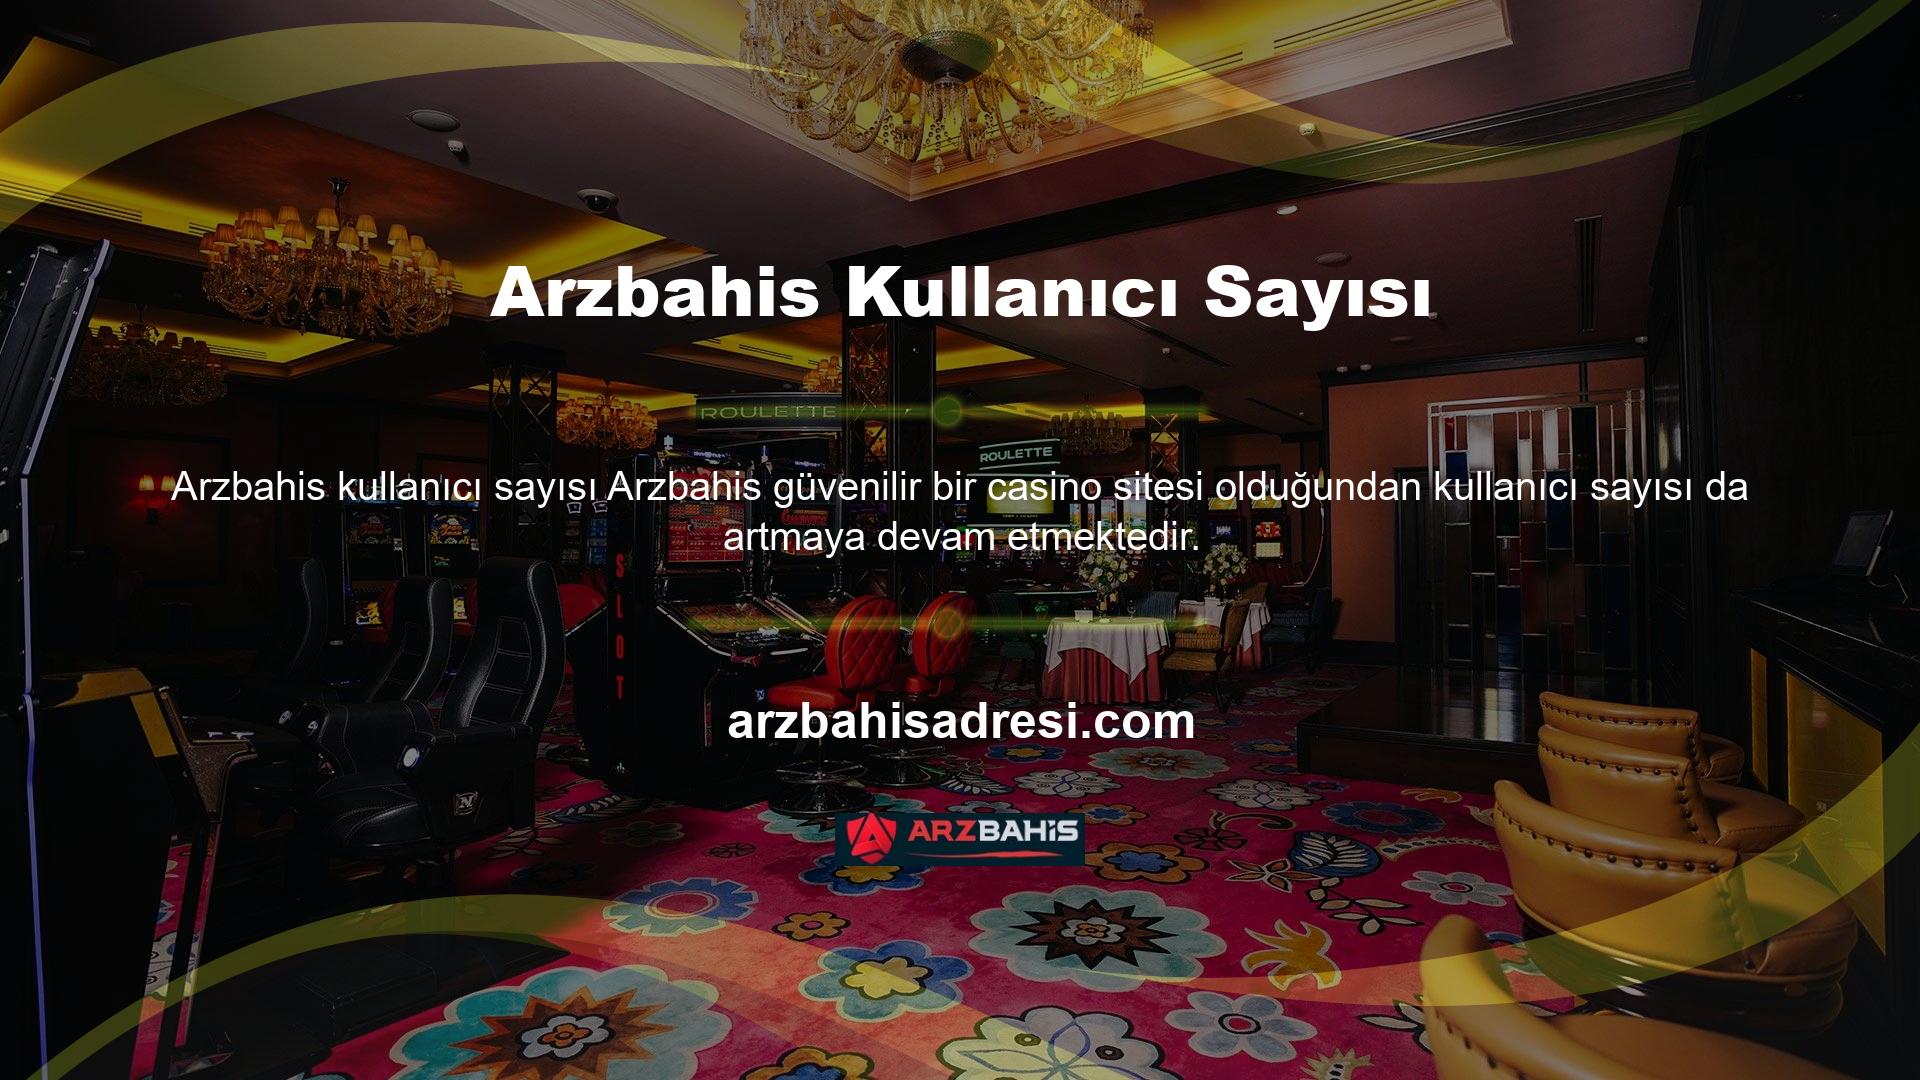 Bahisçiler, Arzbahis web sitesini diğer birçok bahis sitesi yerine sağlam nedenlerden dolayı tercih etmektedir